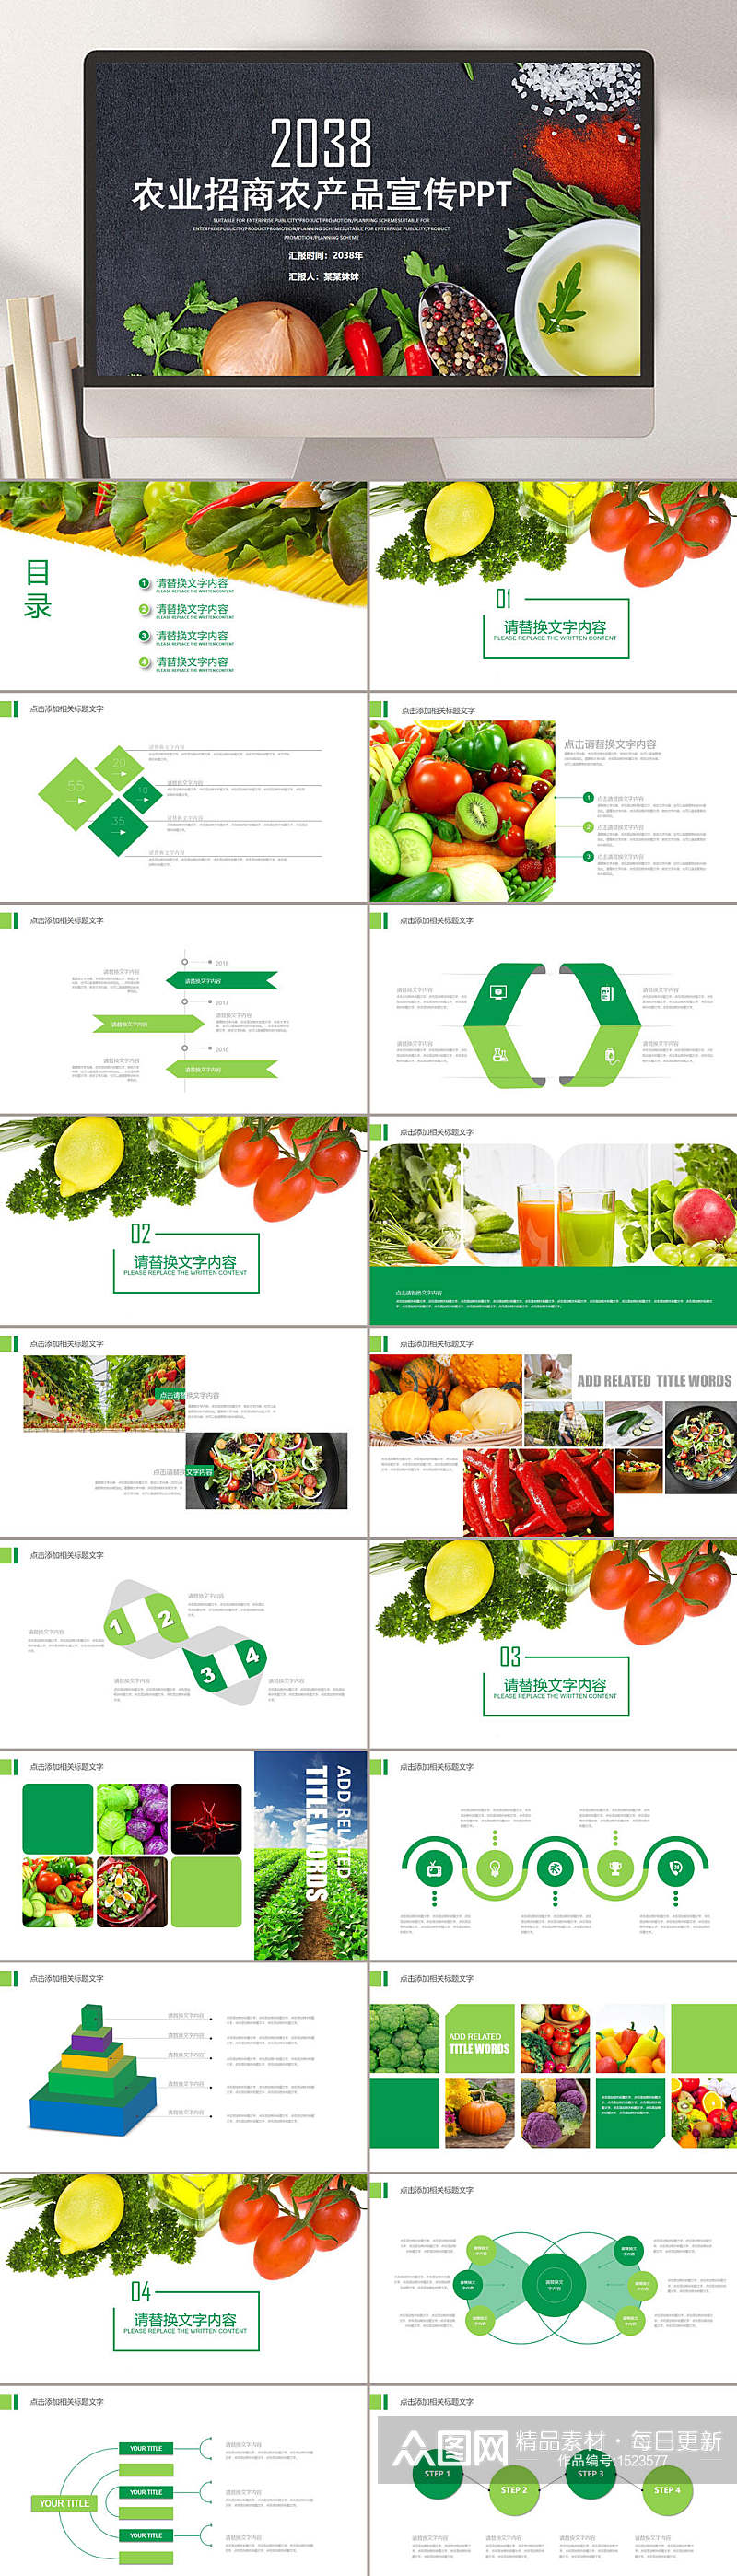 水果蔬菜农产品宣传PPT模板素材